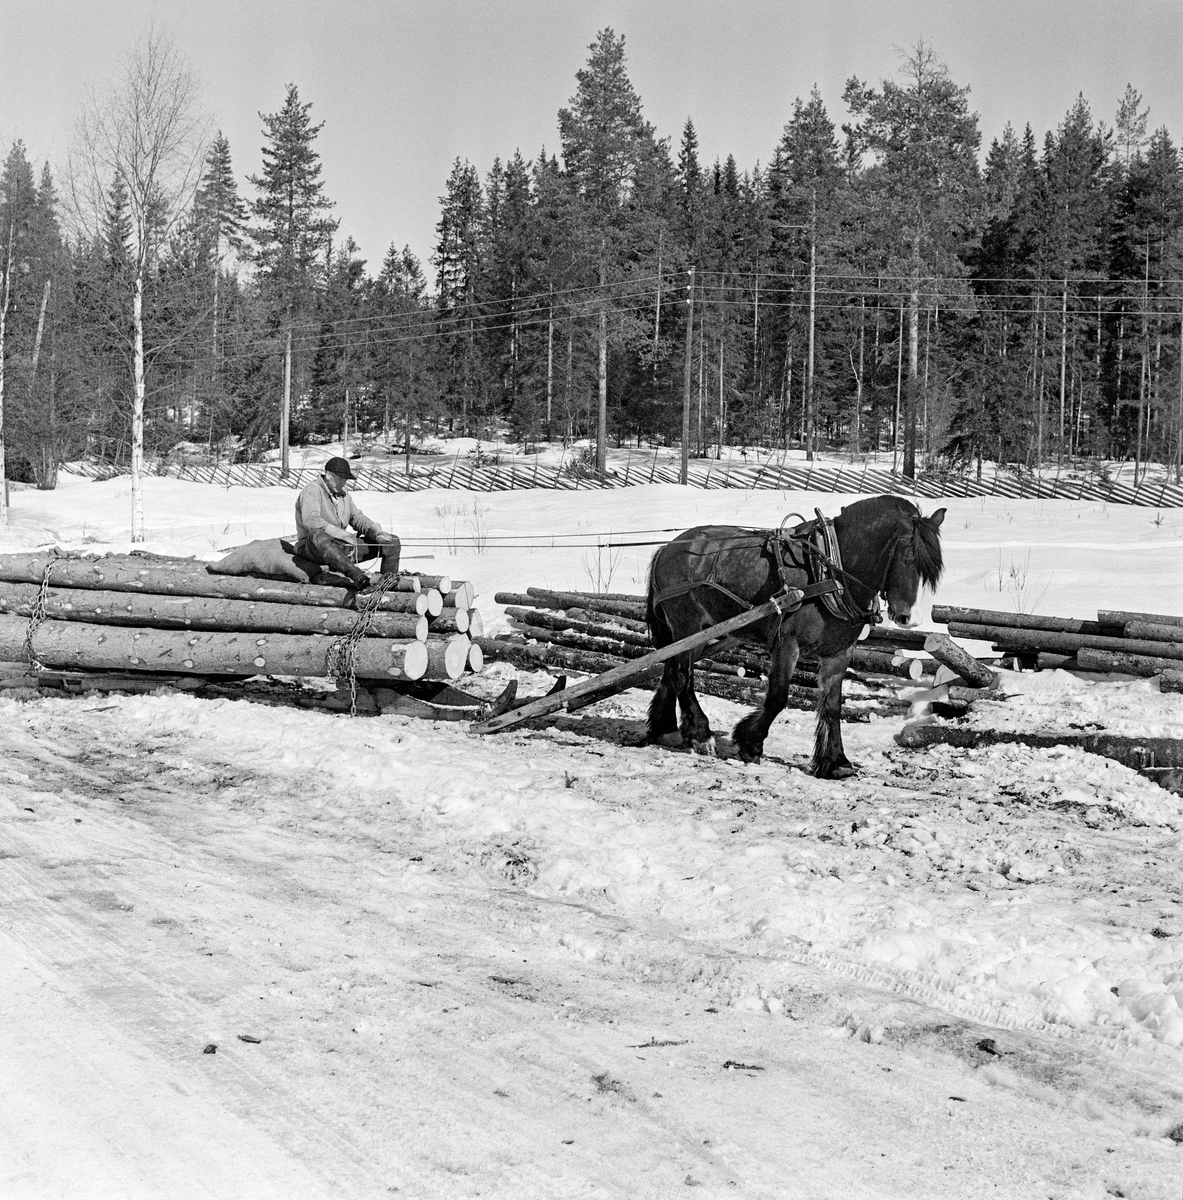 Jørgen Larsen (1919-1988) fra Hernes i Elverum, fotografert under tømmerkjøring med hest i Stavåsen vinteren 1971.  Her er det en dølahest som trekker et forholdsvis stort lass med ubarket grantømmer på en tømmerrustning – en toleddet tømmerslede, som også ble kalt «bukk og geit».  Bildet er tatt idet Larsen og hesten hans ankommer velteplassen som lå like ved en bilveg over et snødekt jorde.  Hesten hadde bogtresele med ei stoppet ringpute, som er tredd over hodet på dyret slik at den ligger an mot nakken og bringen på trekkdyret.  Derfra går det kraftige drotter (draglær) til orringen, som er plassert i krysningspunktet mellom bukgjorden, bærereimene fra høvret og bakselen.  Bakselen, som ble ført horisontalt fra orringene bakover sidene og rundt øvre del av lårene, var nødvendig for at hesten skulle kunne «holde igjen» i utforbakker.  Hesten ble styrt ved hjelp av tømmer, som er forankret i et munnbitt.  Tømmene ble ført gjennom ringene på høvret, og de var så lange at kjørekaren kunne betjene dem fra en sittende posisjon på en høyfylt striesekk den fremre delen av tømmerlasset. 